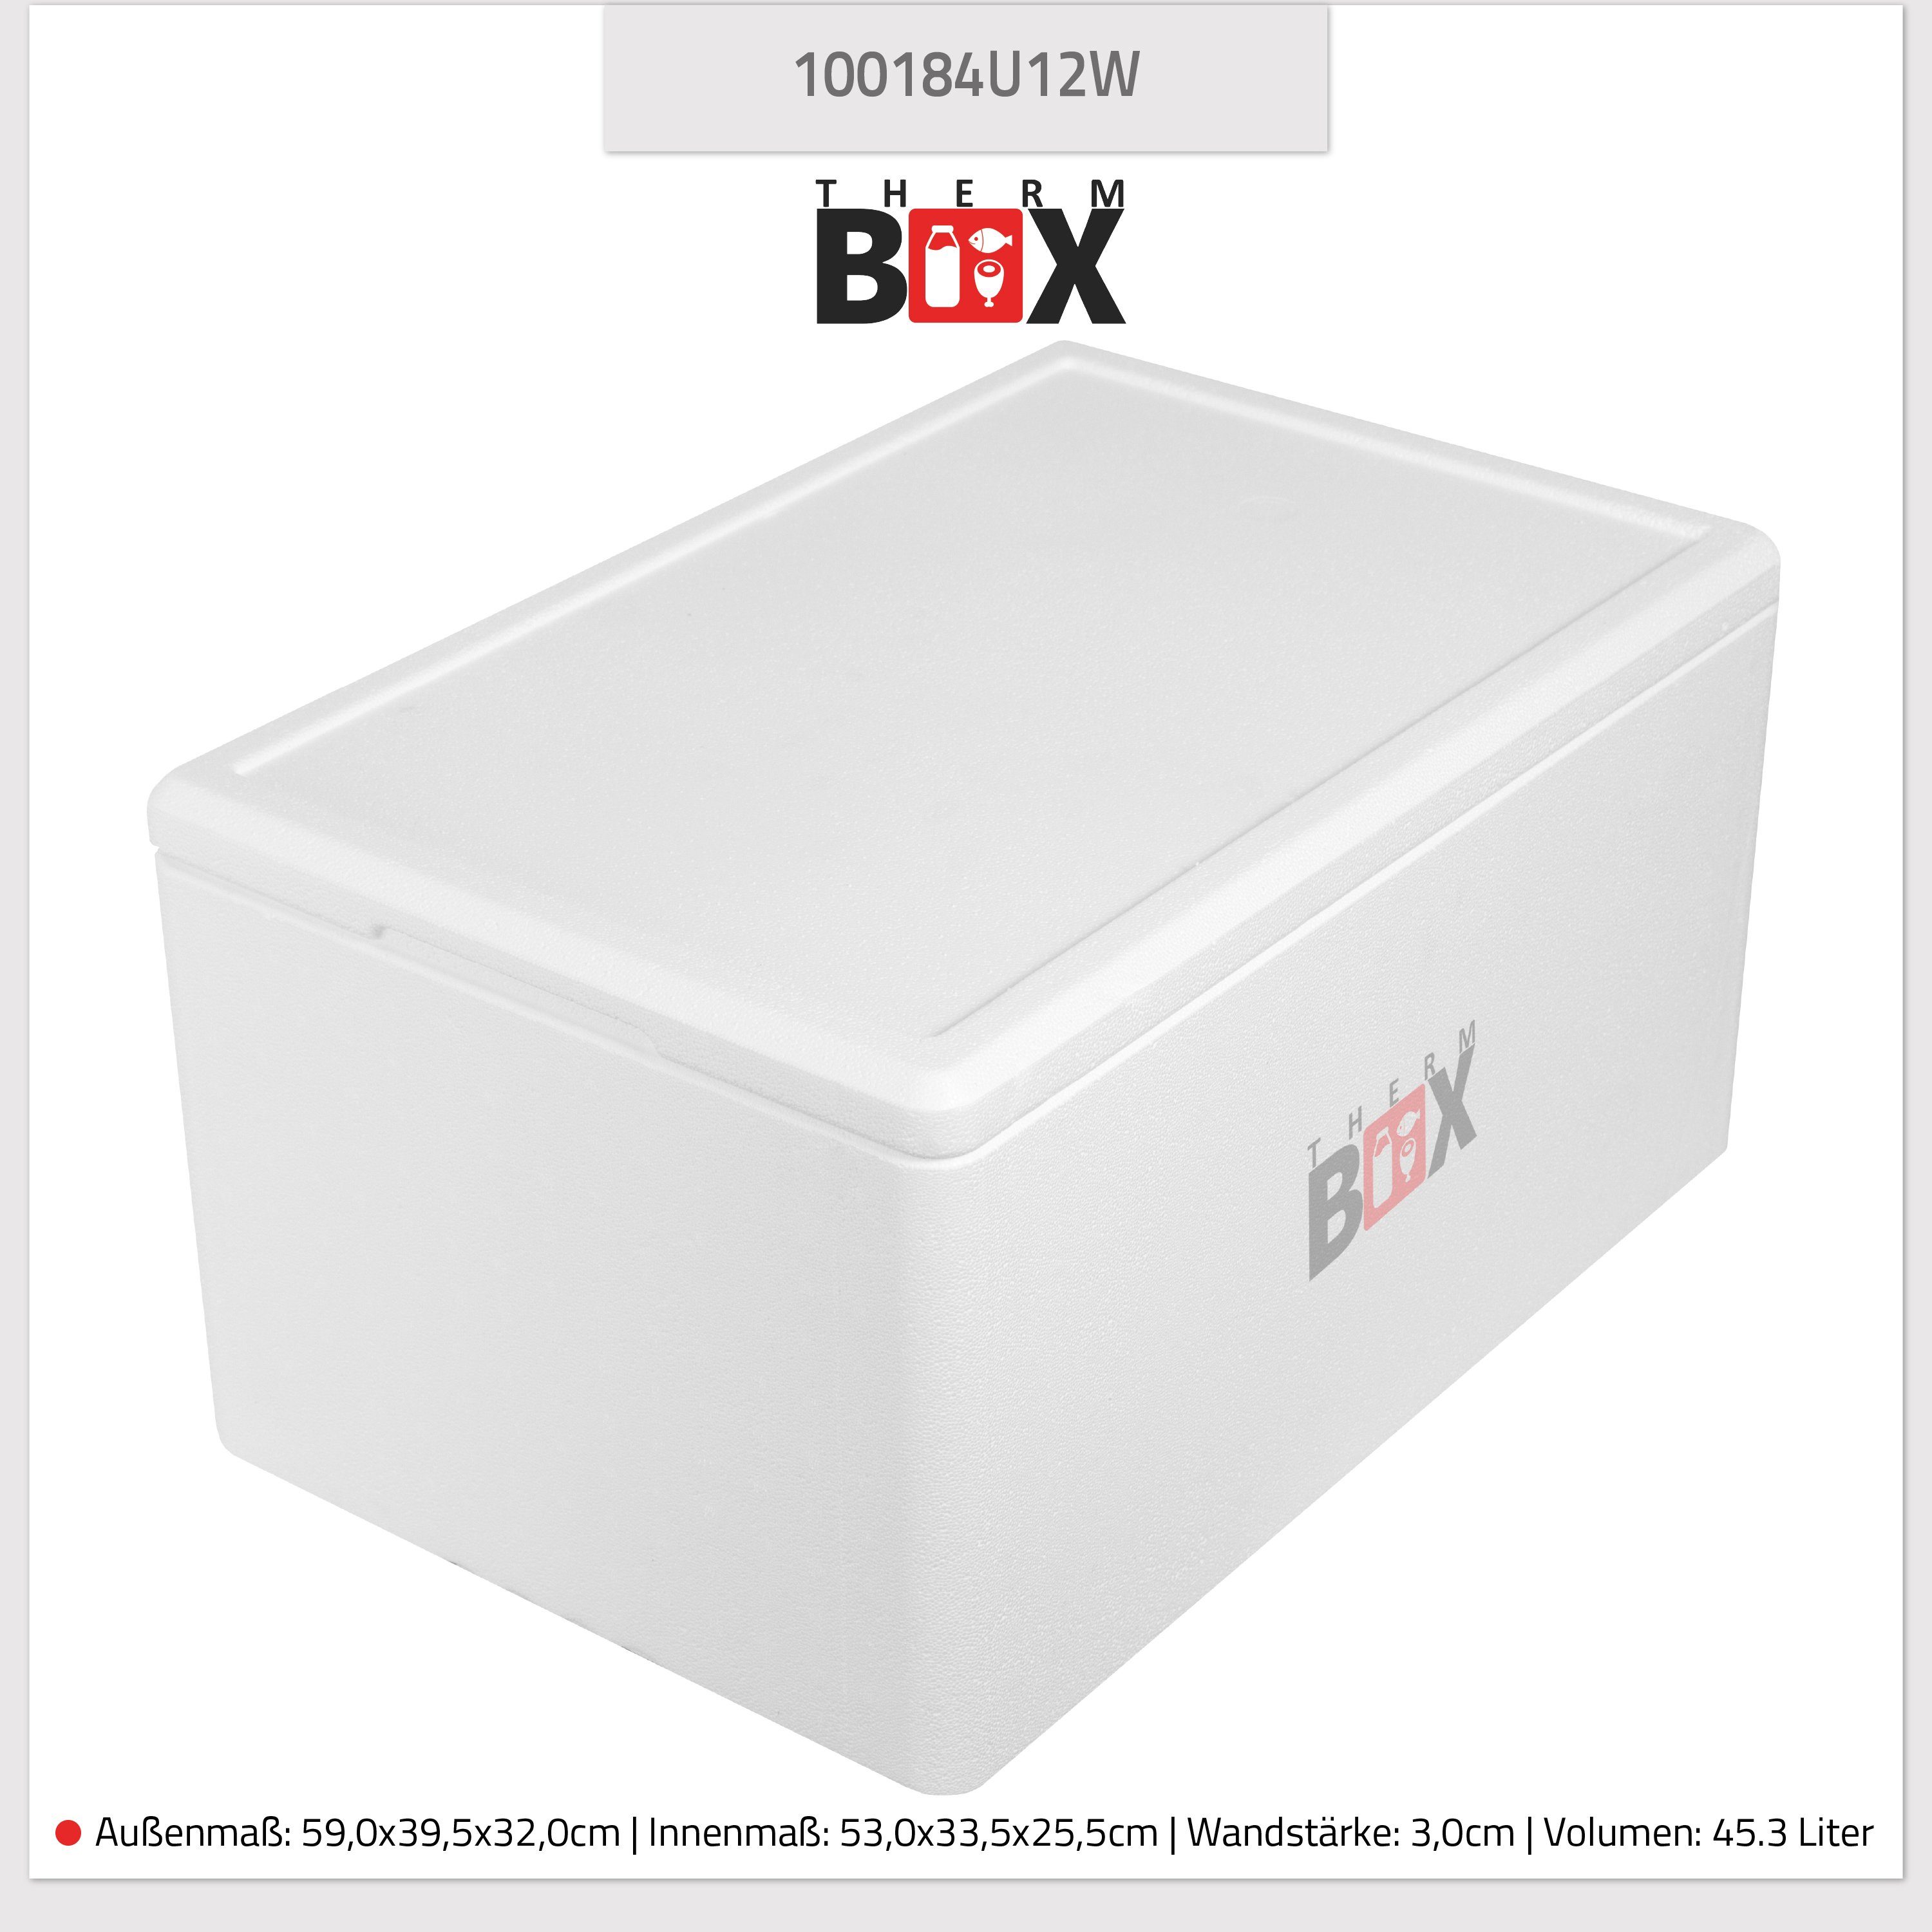 Wiederverwendbar 2 Thermobox & Thermobehälter Isolierbox (1, 46L Set & Boxen Styroporbox Warmhaltebox, 12L Essen 2-tlg., Kühlbox Thermobox Karton), mit Getränke Deckel für THERM-BOX Styropor-Verdichtet, im